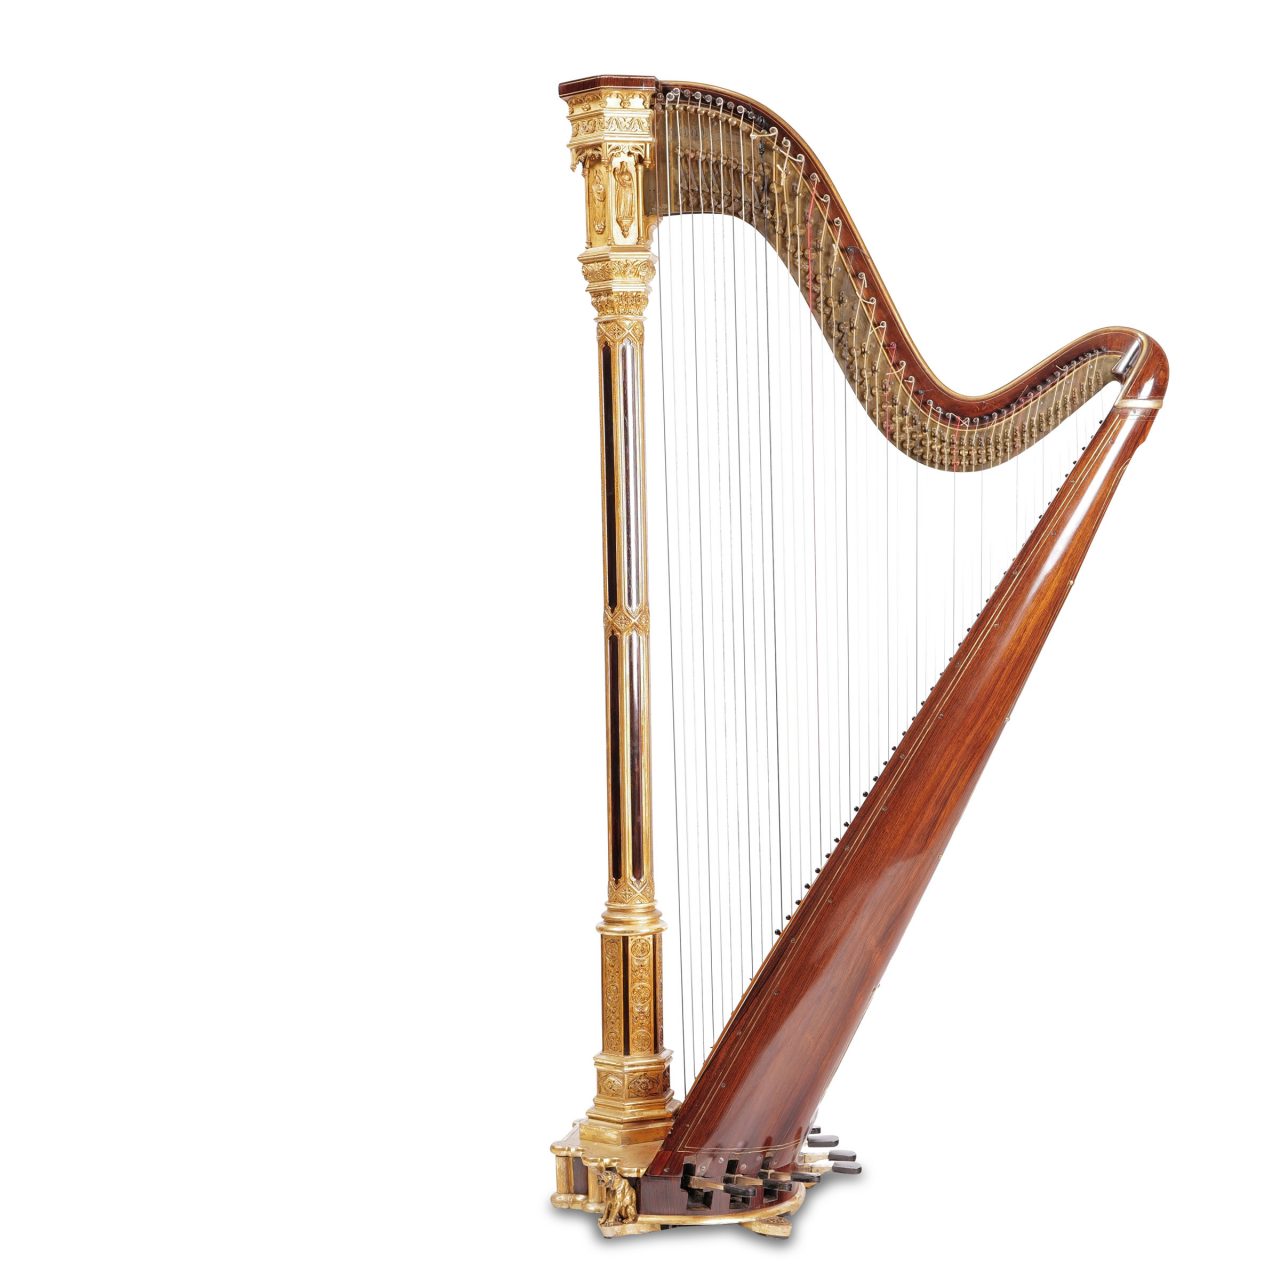 Harfe Harp Pedalharfe Nr. 2394 aus der französischen Instrumentenbauers Sébastien Érard